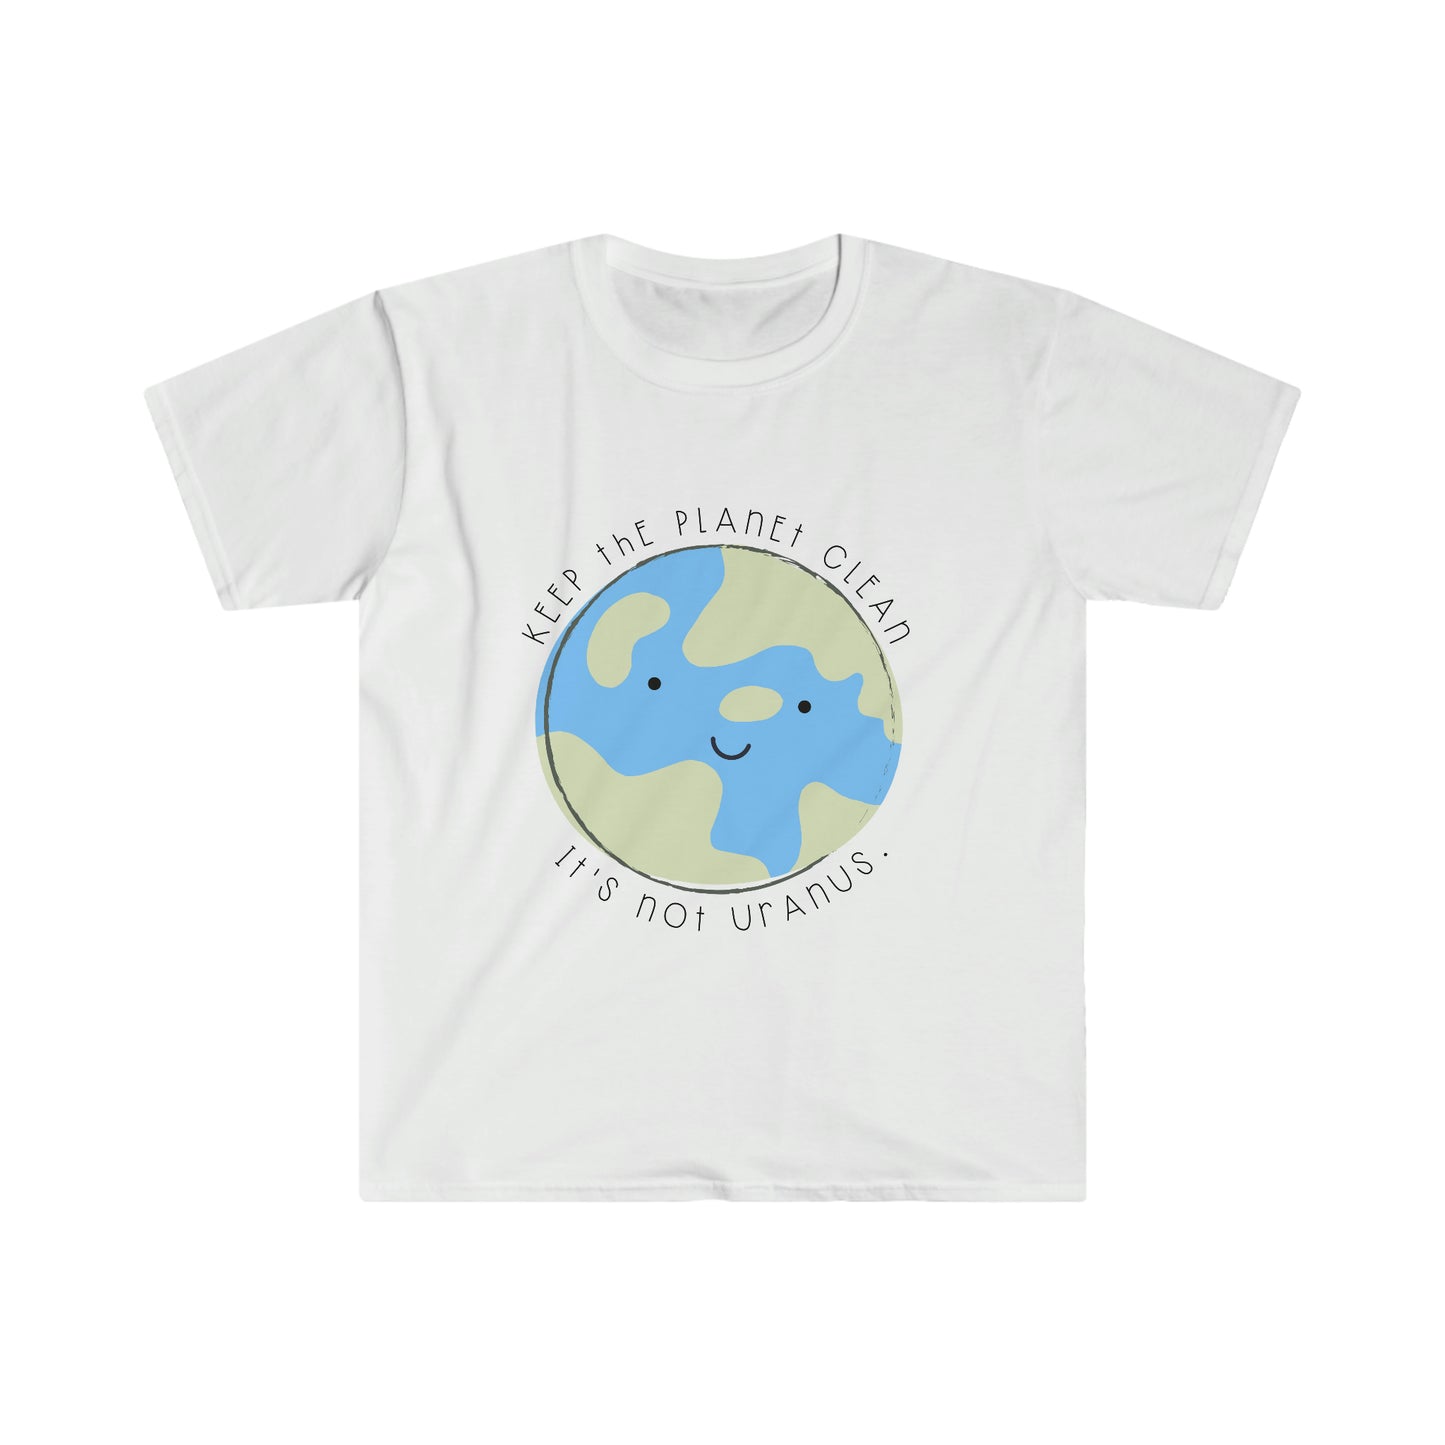 'Keep the Planet Clean, It's not Uranus' Teacher T-Shirt